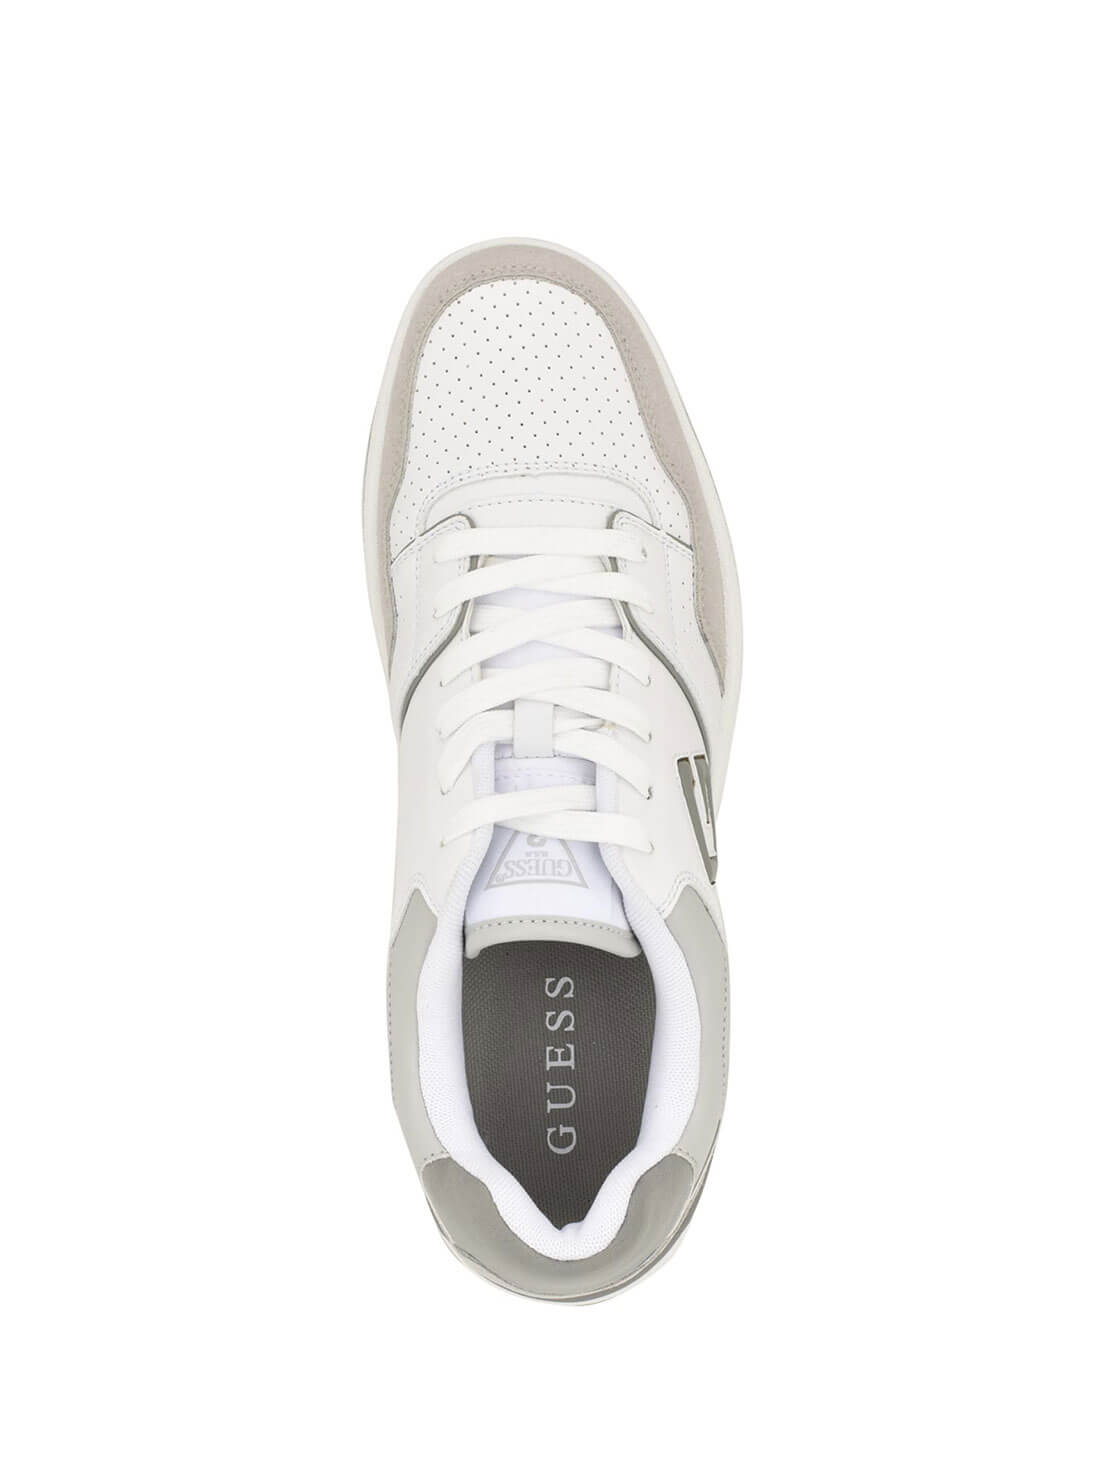 Light Grey Logo Narsi Sneakers | GUESS Men's Sneakers | top view